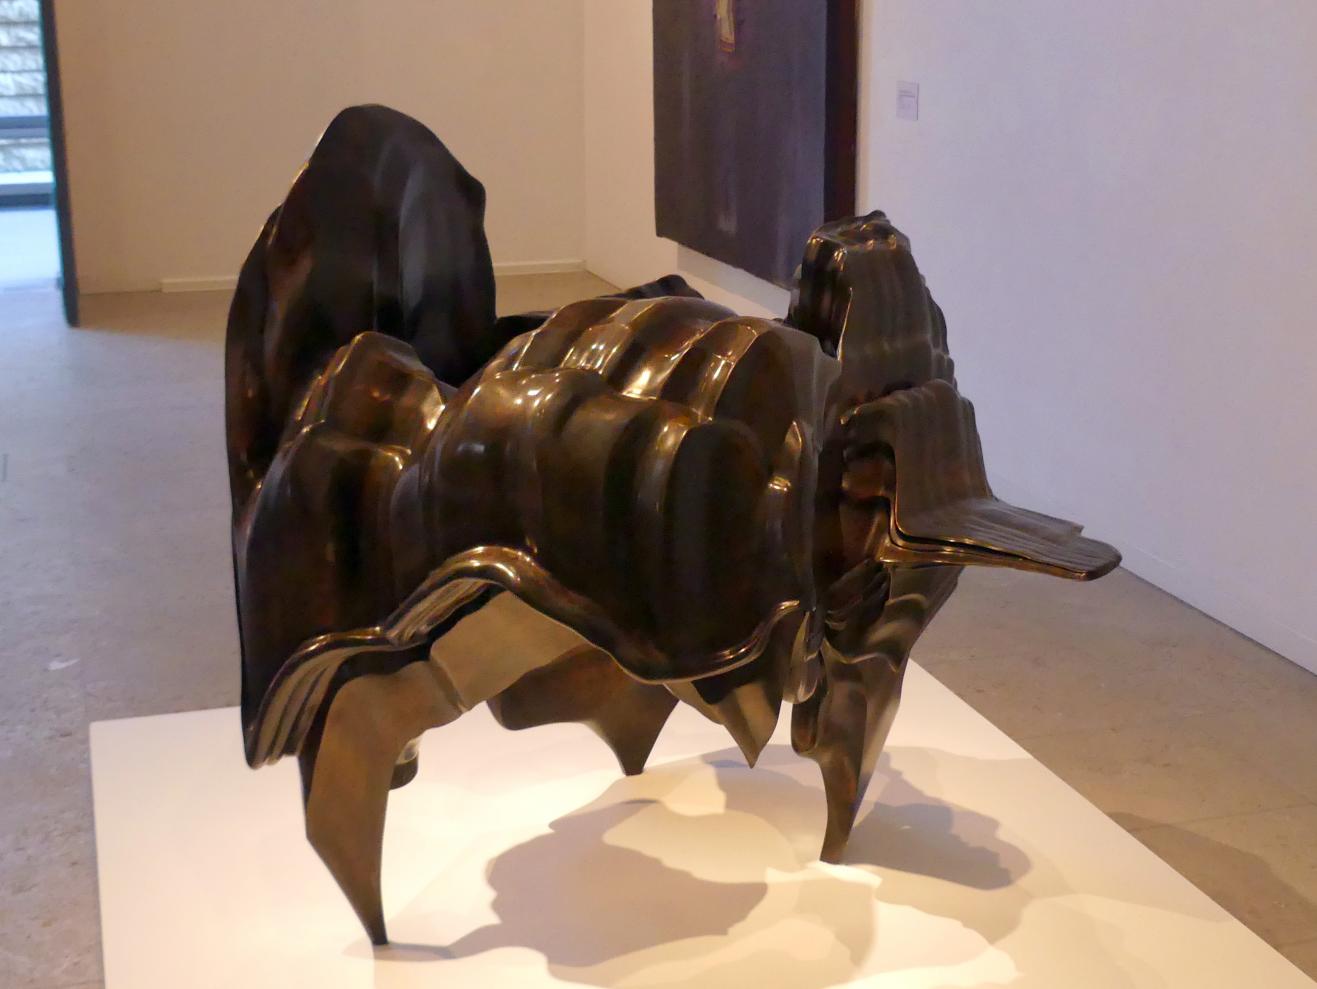 Tony Cragg (1980–2018), Cauldron - Kessel, Schwäbisch Hall, Kunsthalle Würth, Ausstellung "Lust auf mehr" vom 30.09.2019 - 20.09.2020, Erdgeschoss, 2005